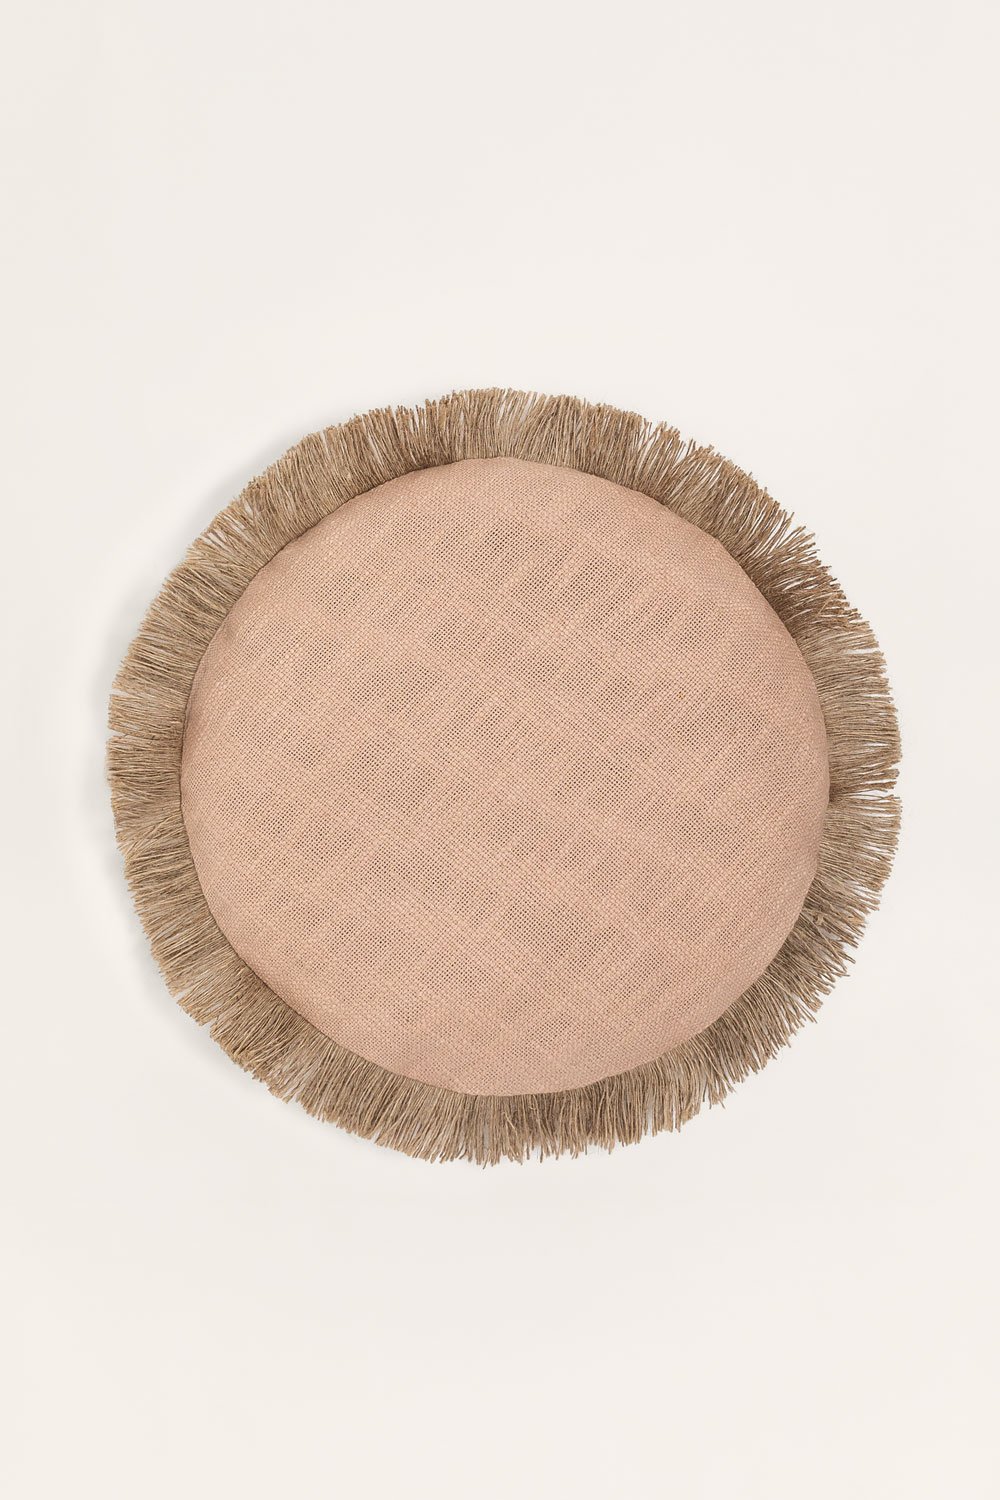 Cuscino rotondo in cotone (Ø40 cm) Paraiba, immagine della galleria 1